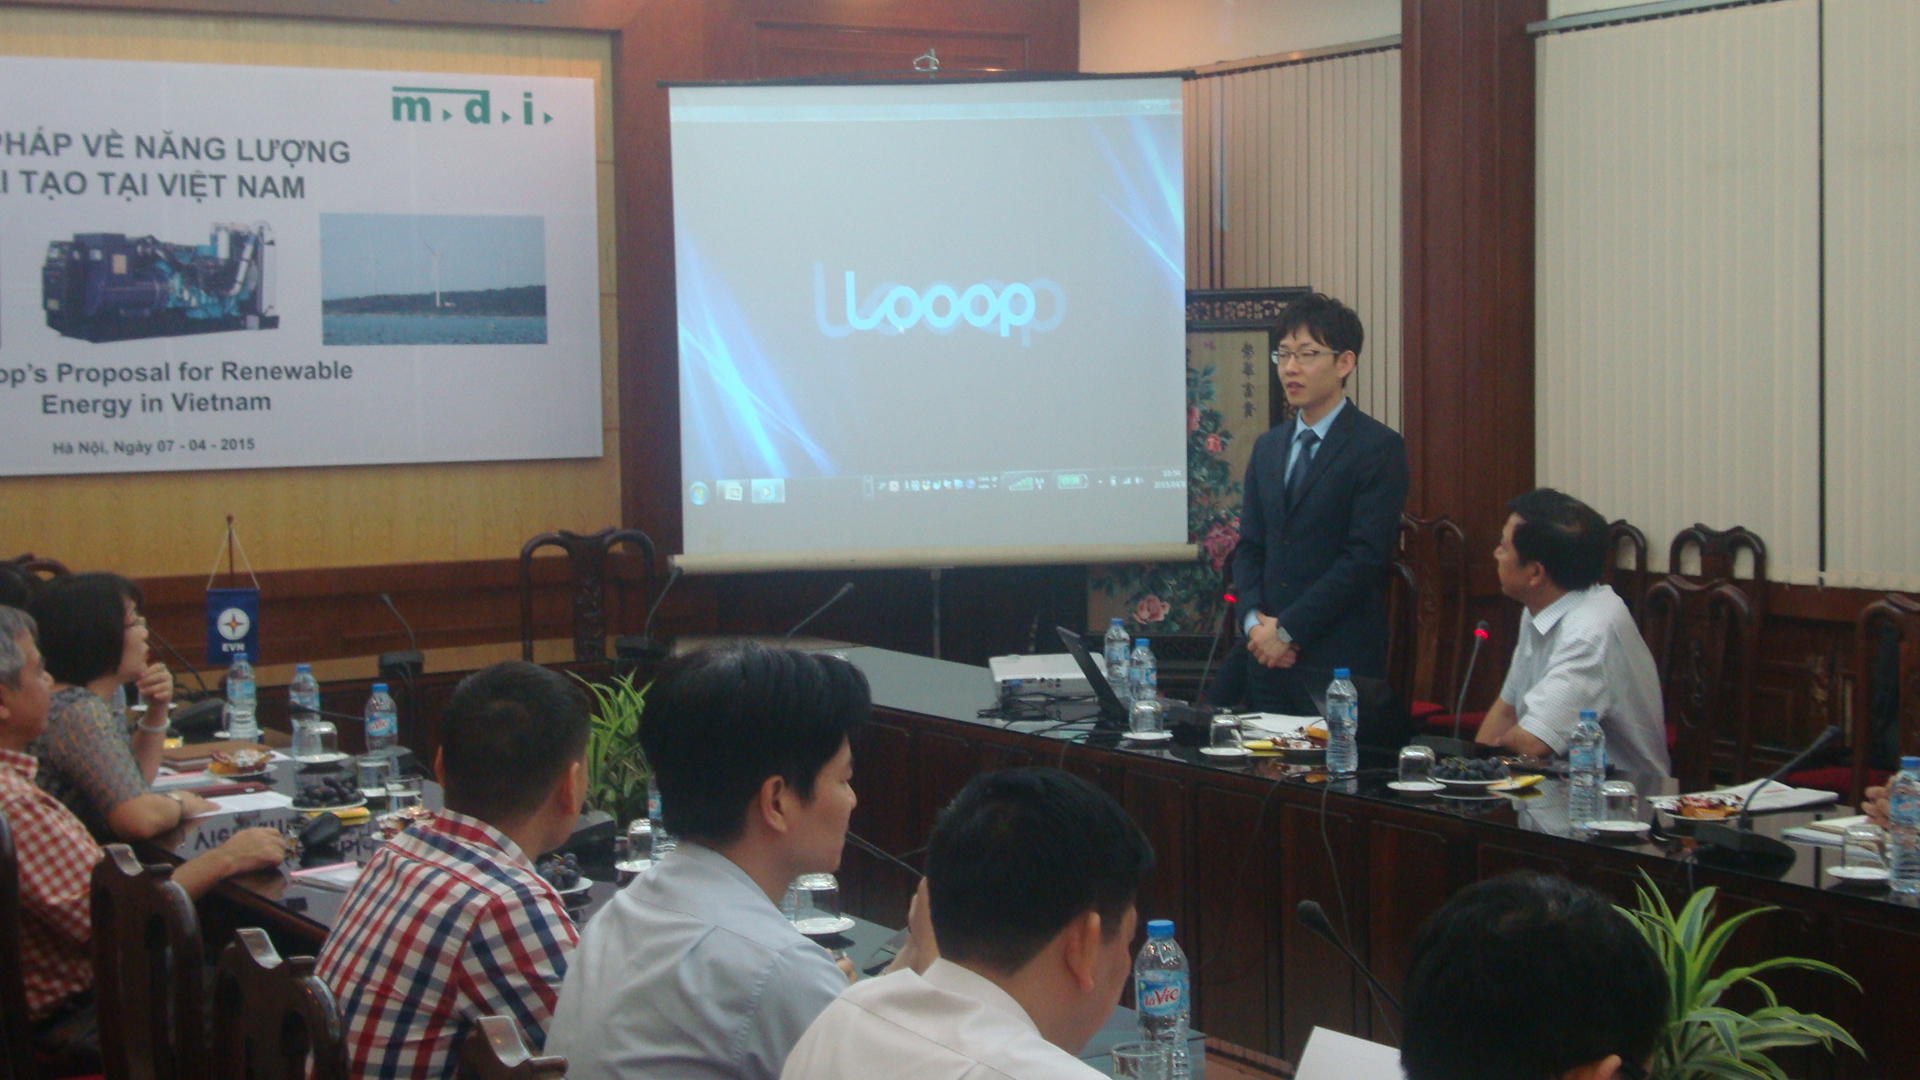 Looop's proposal for renewable energy in Vietnam 